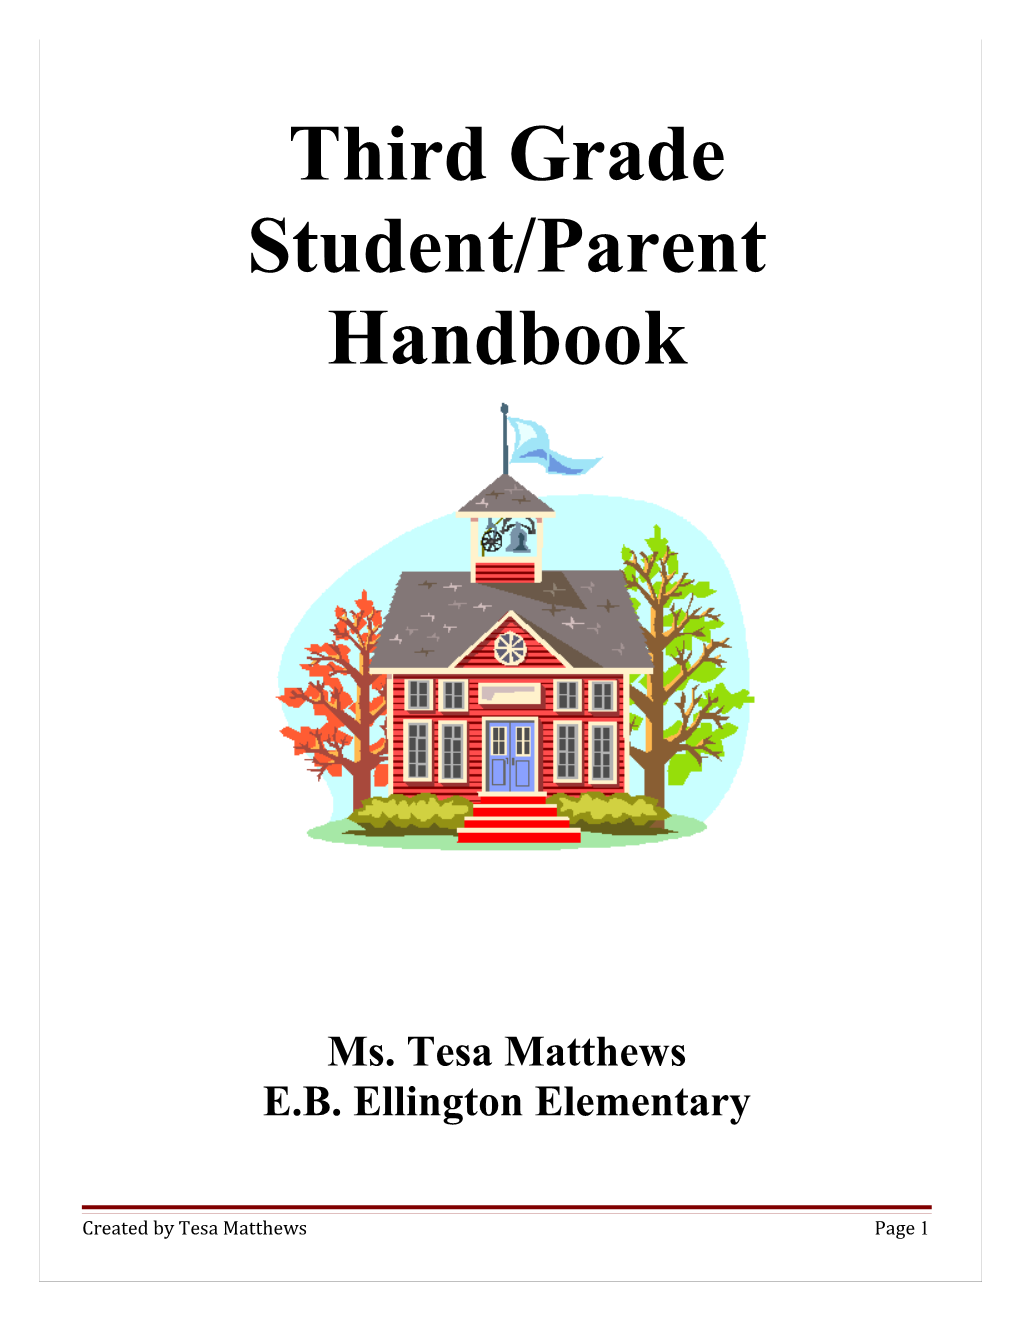 Third Grade Student/Parent Handbook